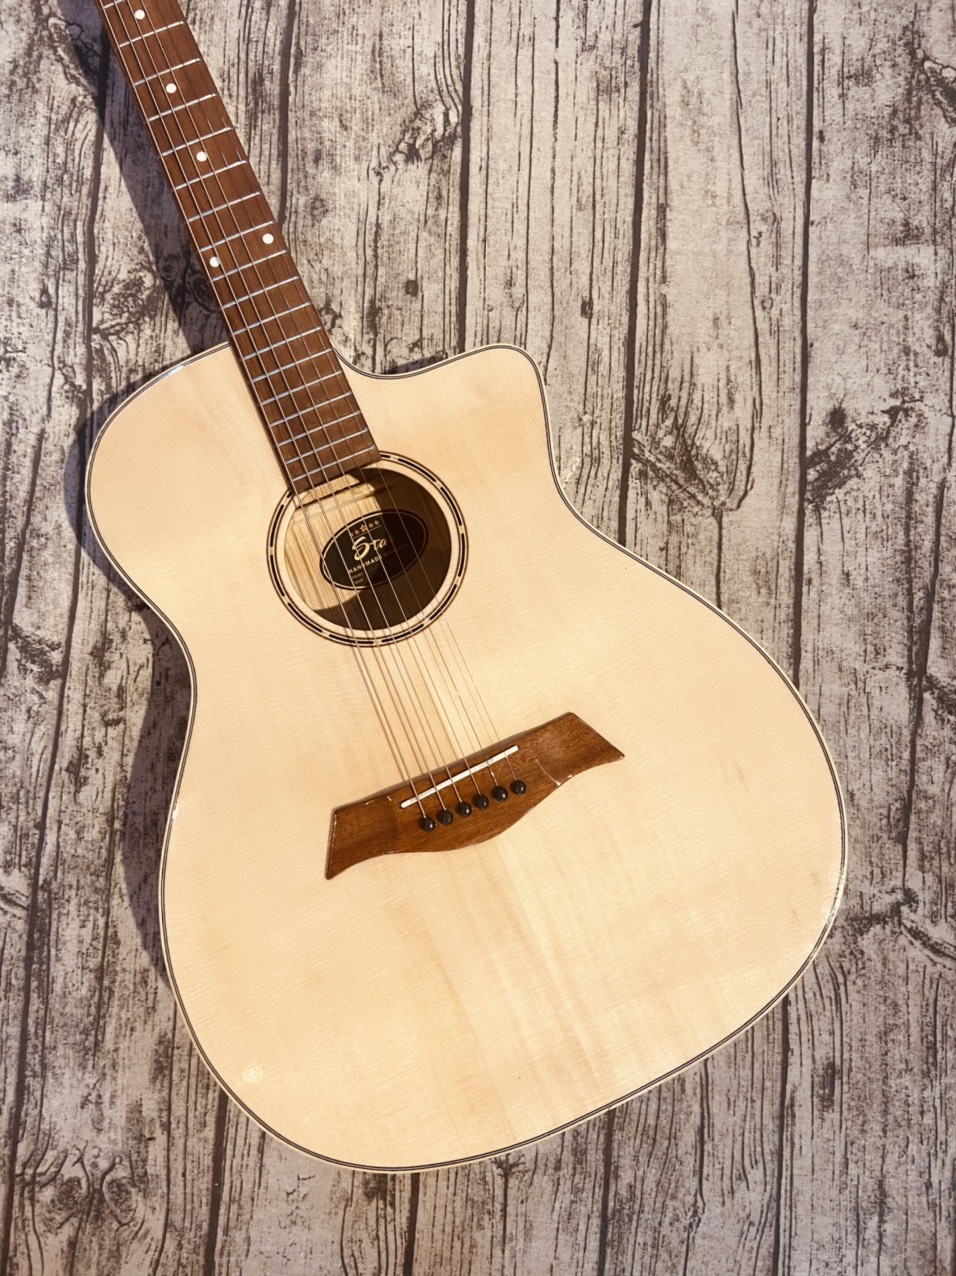 Đàn guitar acoustic giá rẻ có ty chỉnh cần Việt Nam mặt gỗ thông, dễ sử dụng cho người mới...